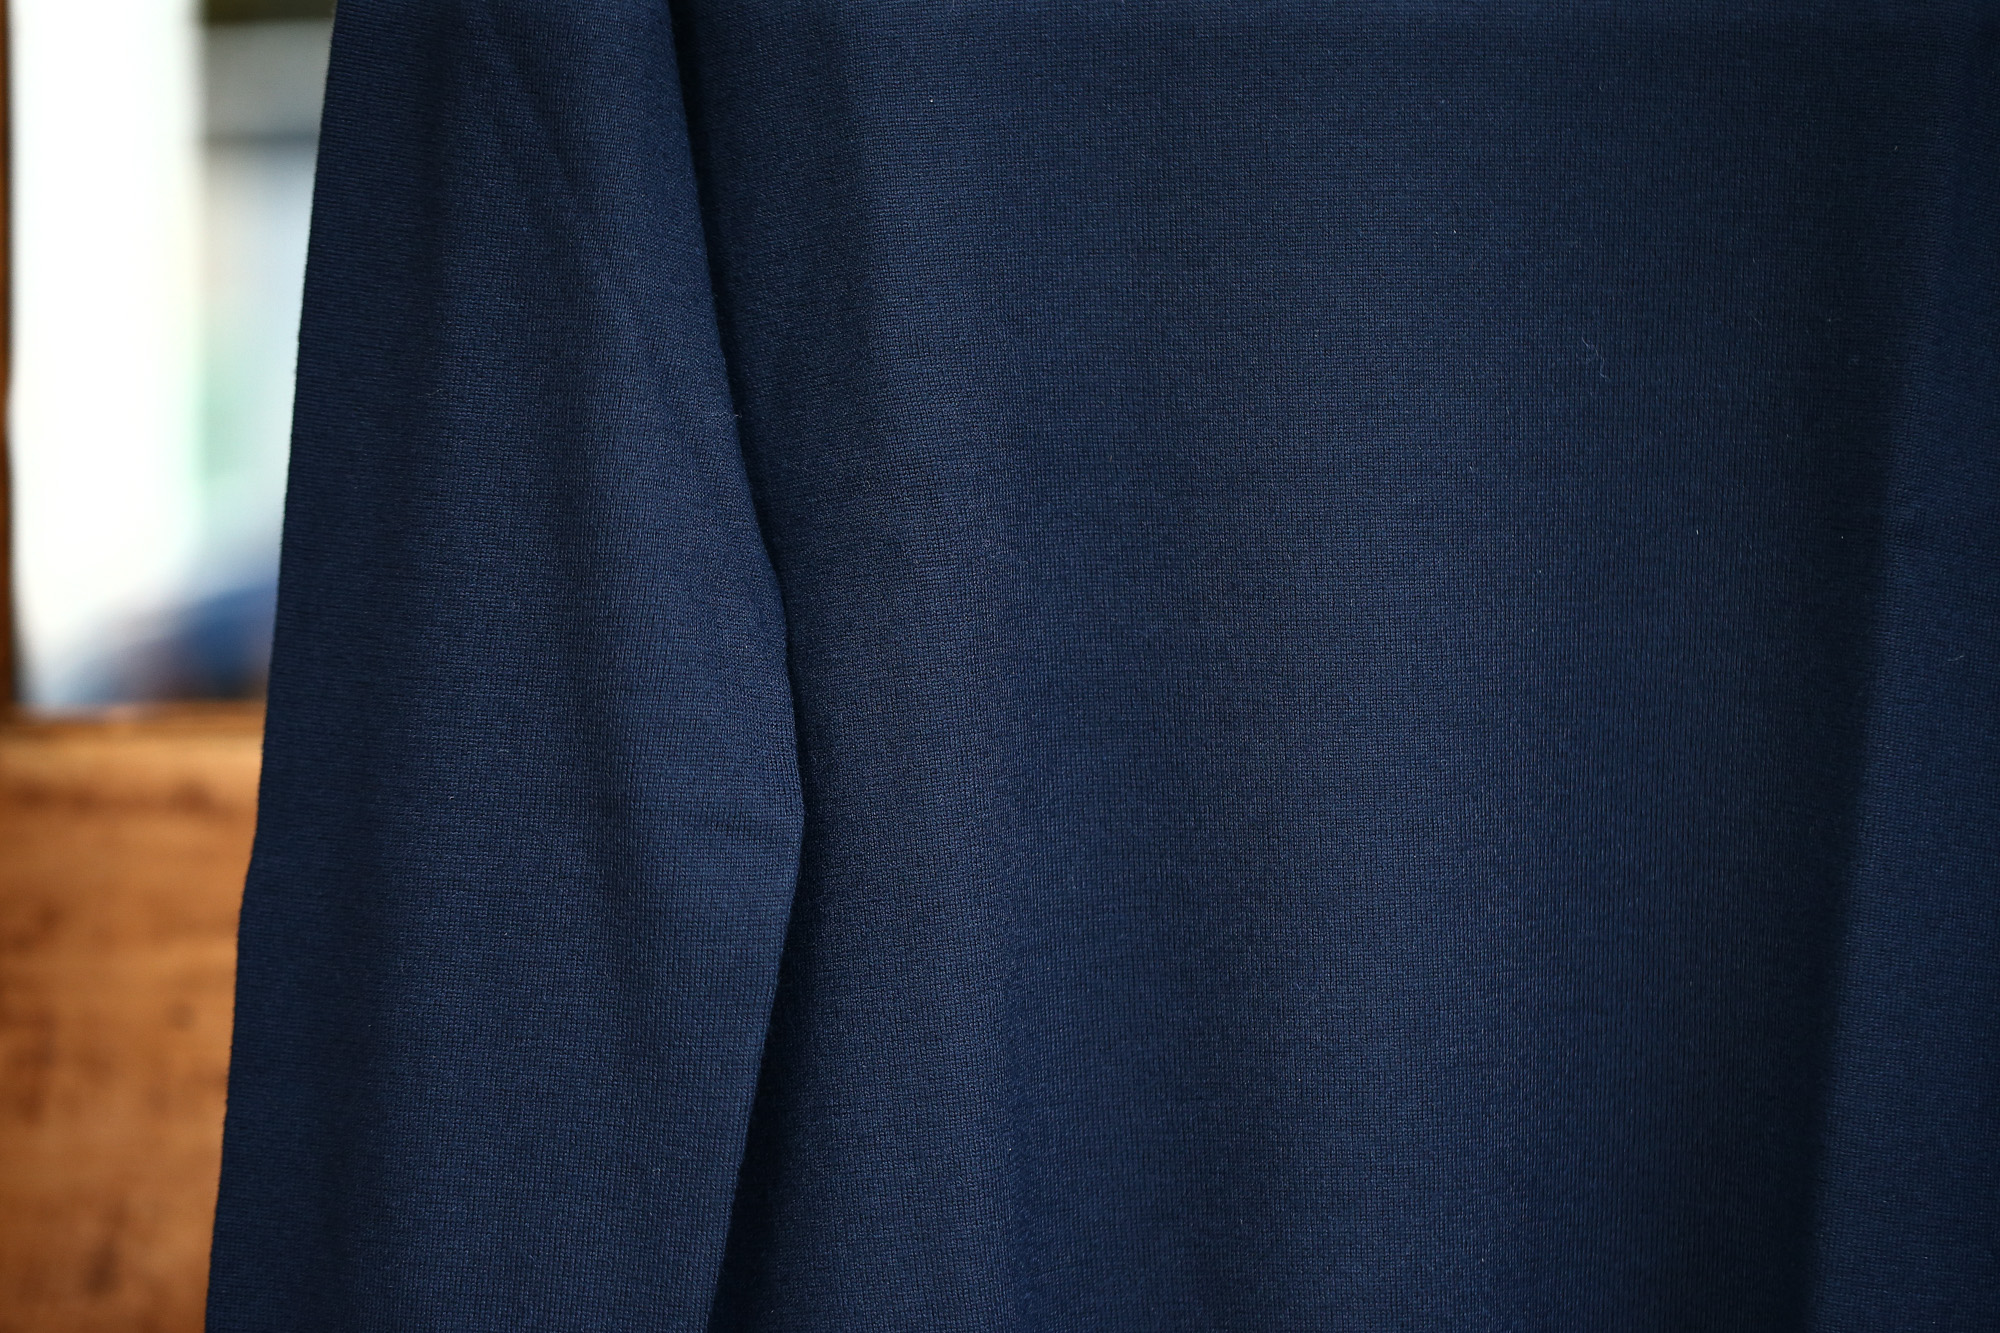 Cruciani (クルチアーニ) Turtle Neck Sweater (タートルネックセーター) WOOL 100% 27ゲージ＆9ゲージ ハイゲージウールニット セーター NAVY (ネイビー・8800) made in italy (イタリア製) 2017 秋冬新作 cruciani クルチアーニ 愛知 名古屋 タートルネック